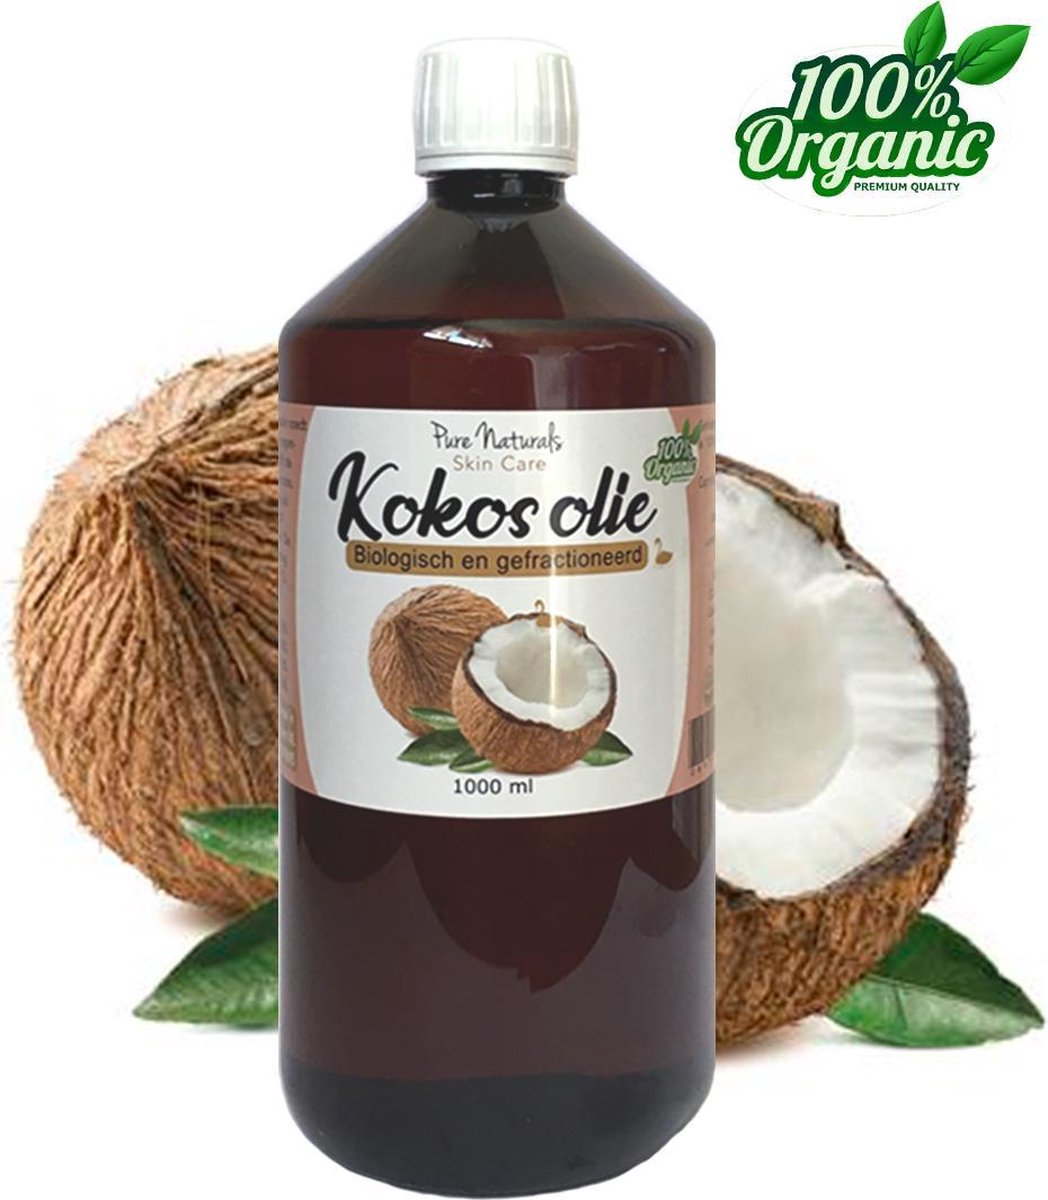 Afrikaanse Silicium Marco Polo Kokosolie vloeibaar 1000 ml - Biologisch - Geraffineerd - Natuurlijke  aftersun - Kokos... | bol.com